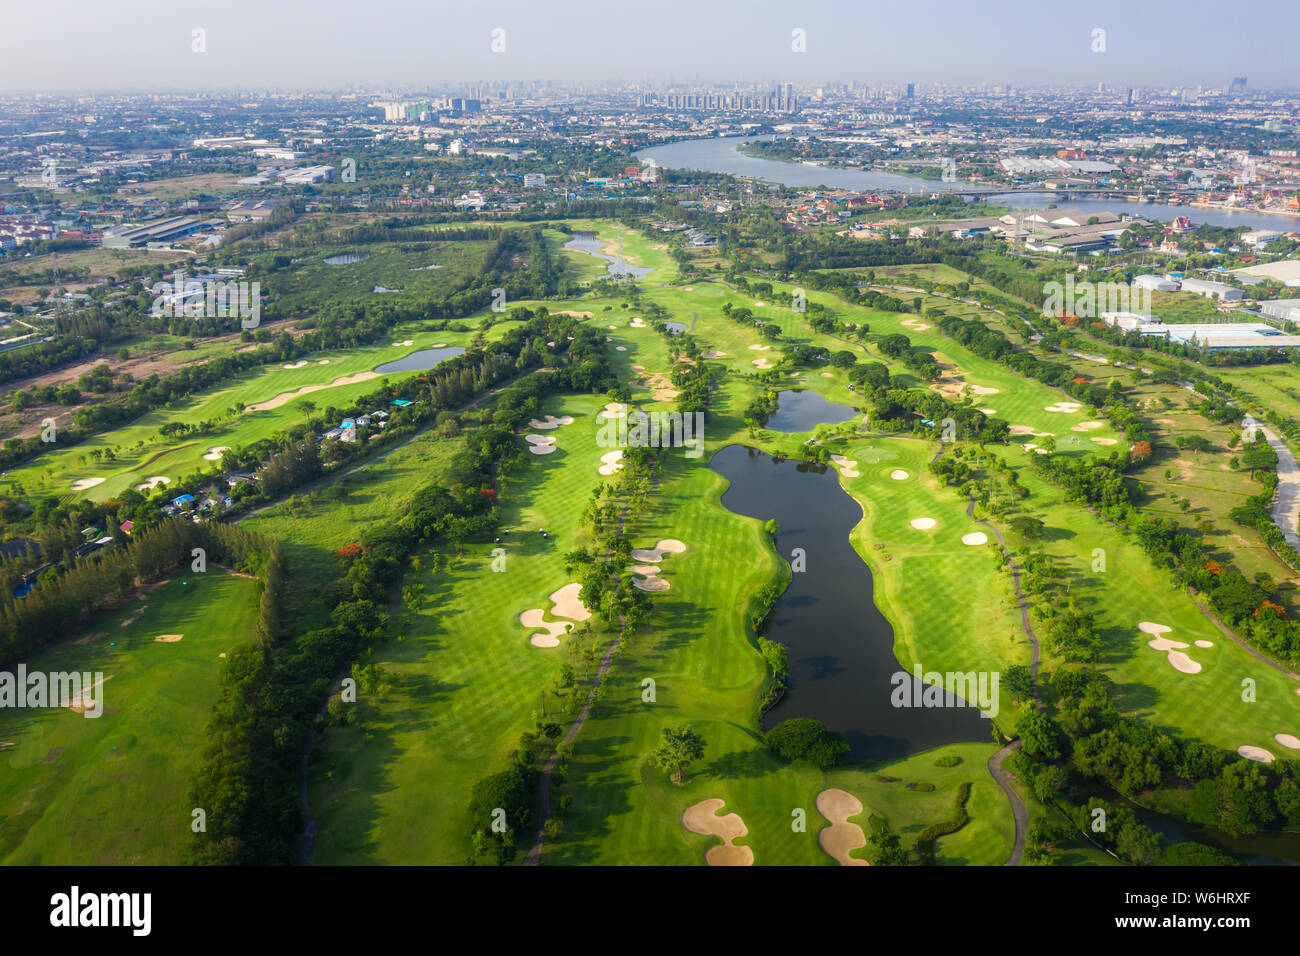 Antenna vista panoramica drone shot del bellissimo campo da golf con persone che giocano a golf nel campo e case in città. Foto Stock